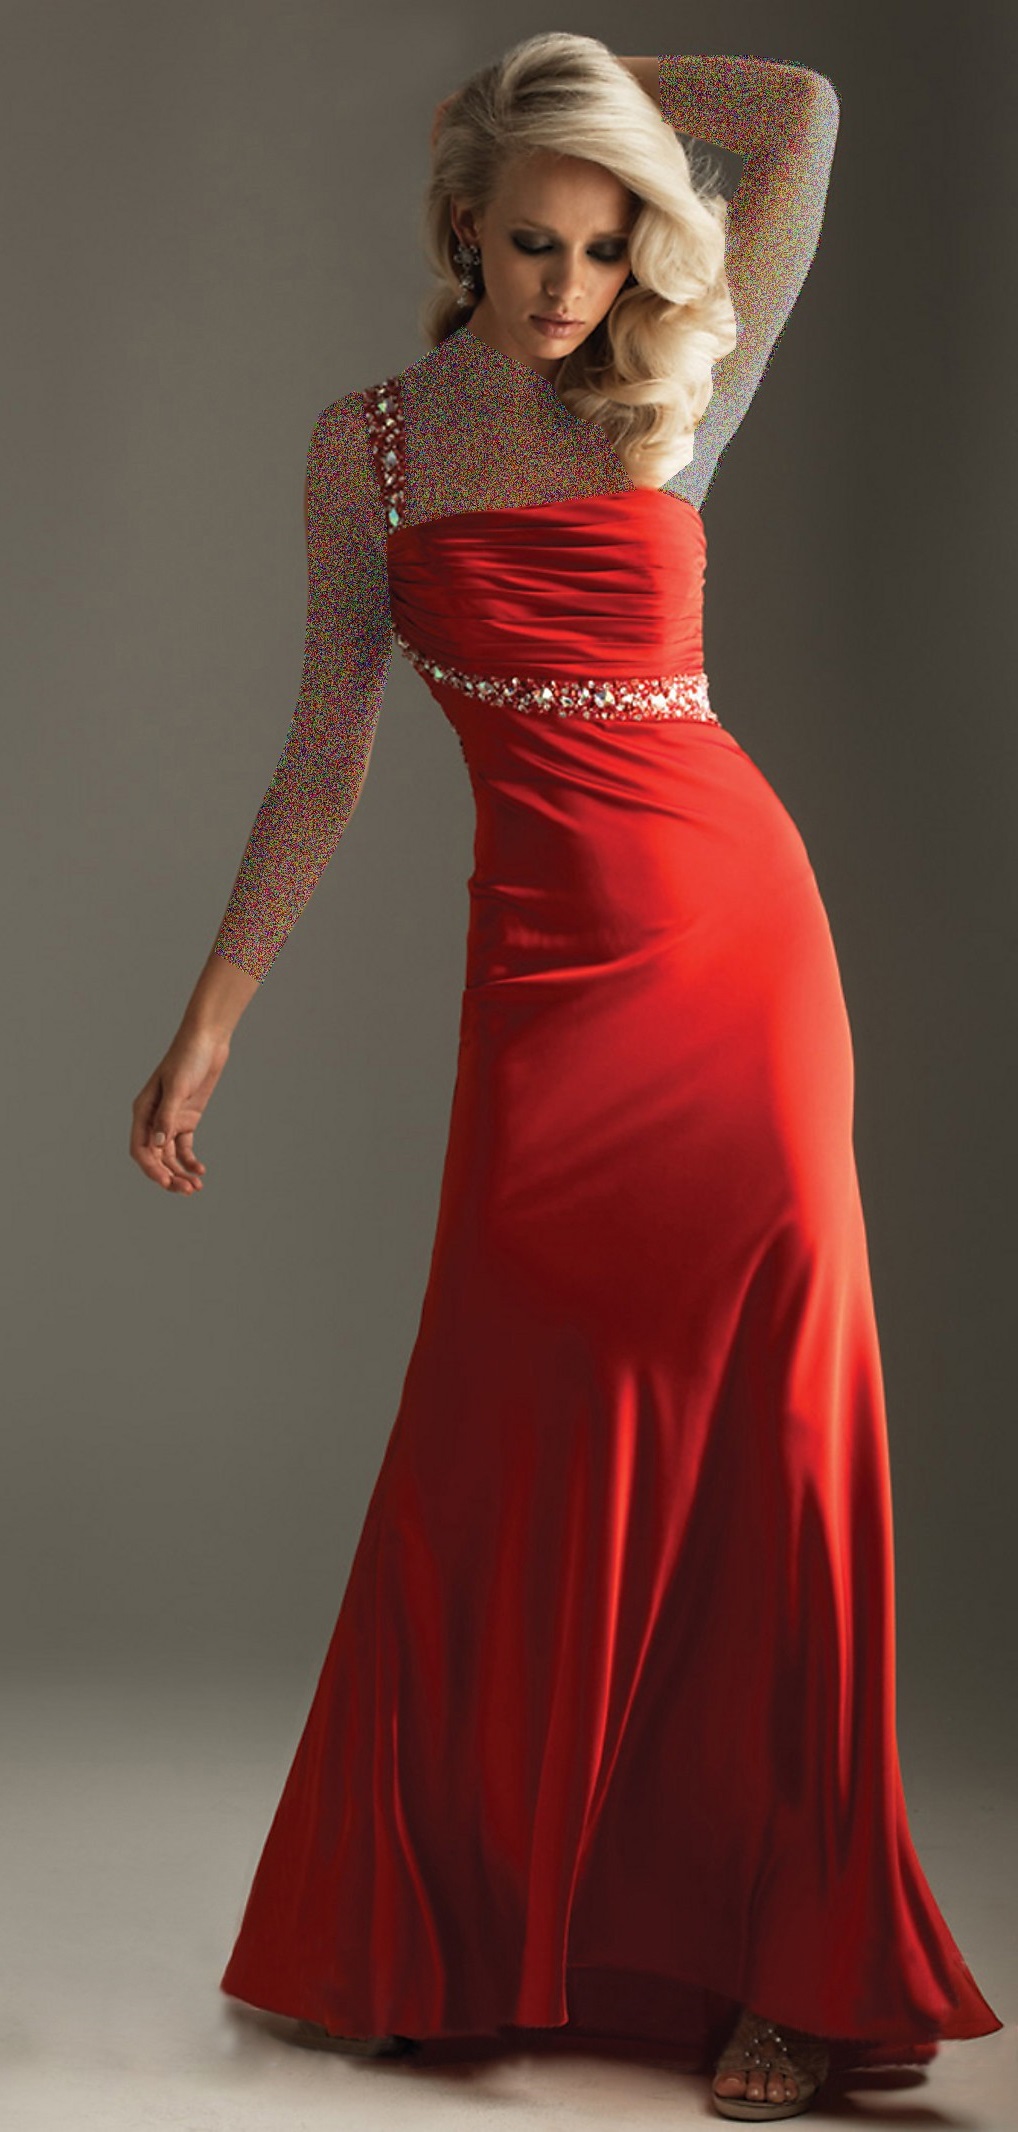 مدل لباس مجلسی دخترانه 2015,مدل لباس مجلسی دخترانه